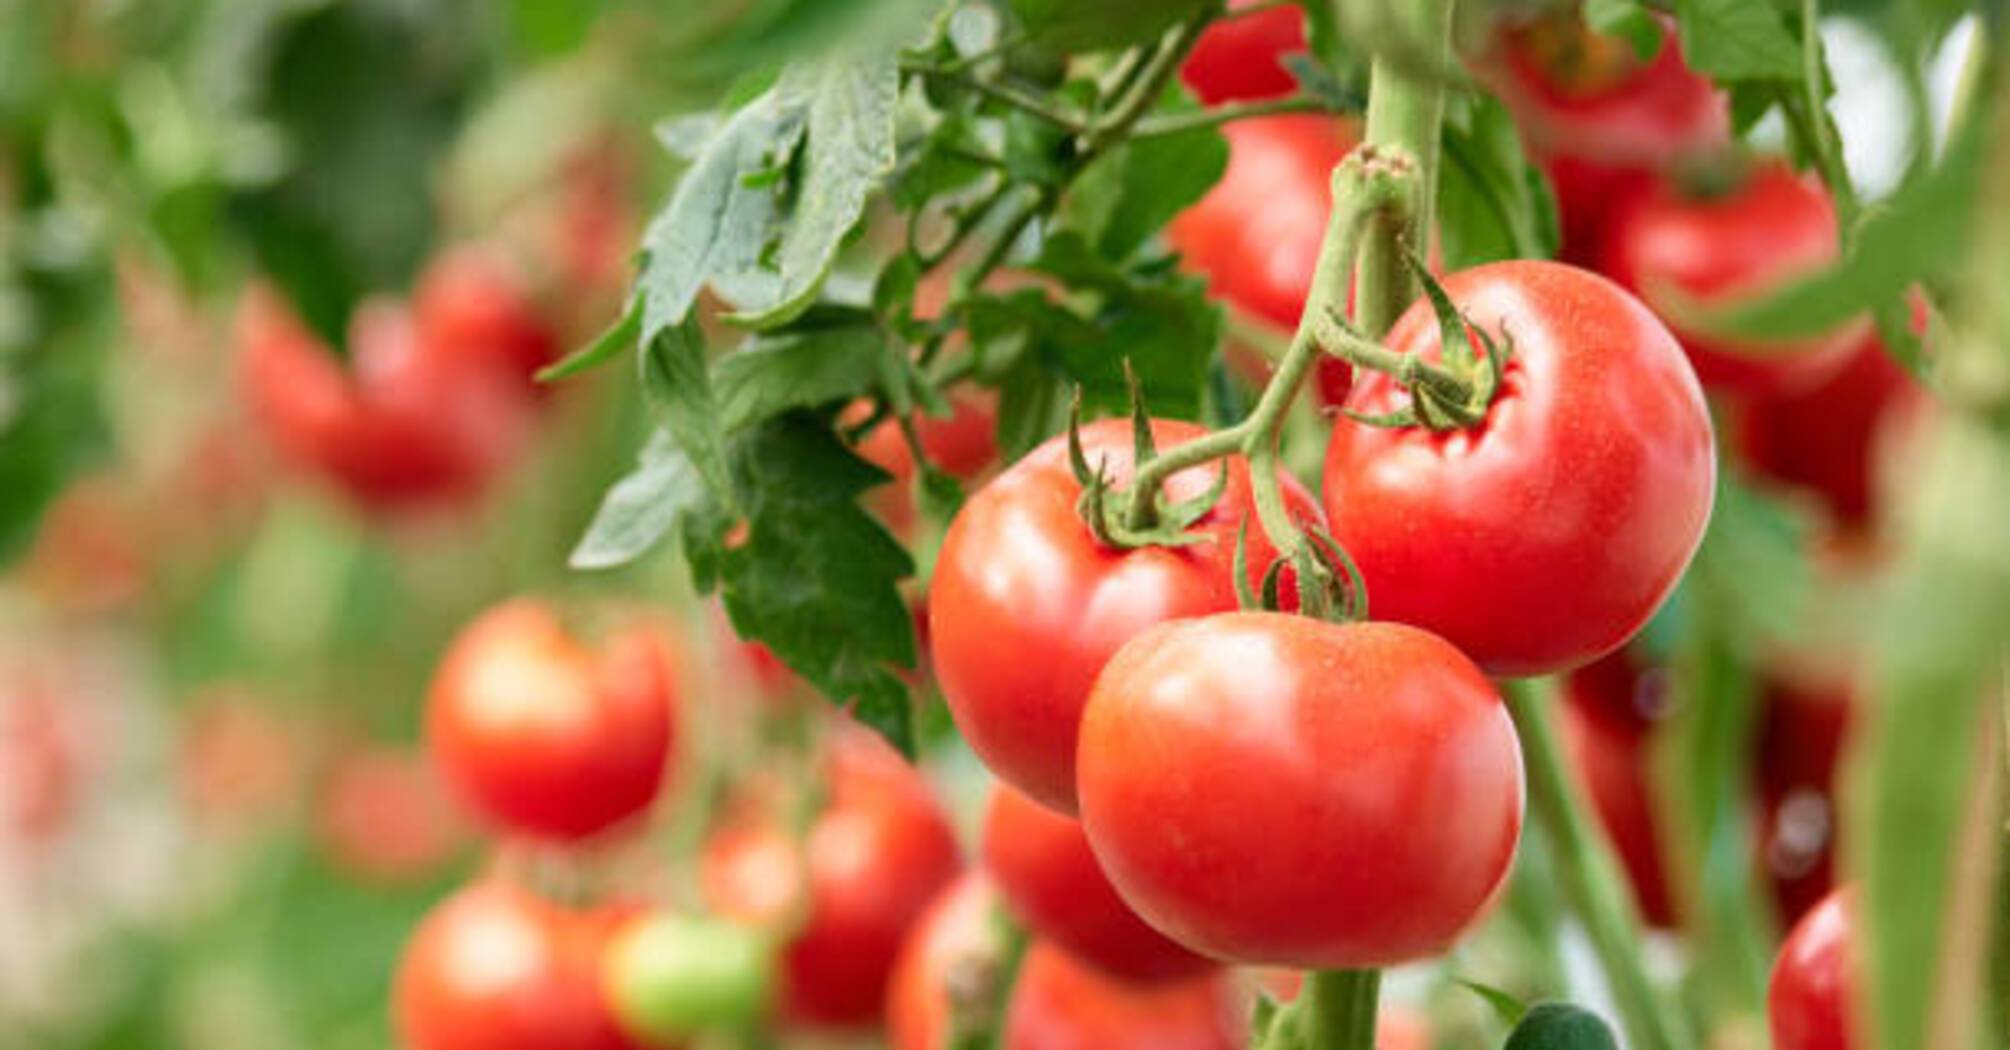 Правильная подкормка для хорошего урожая помидоров: что следует знать